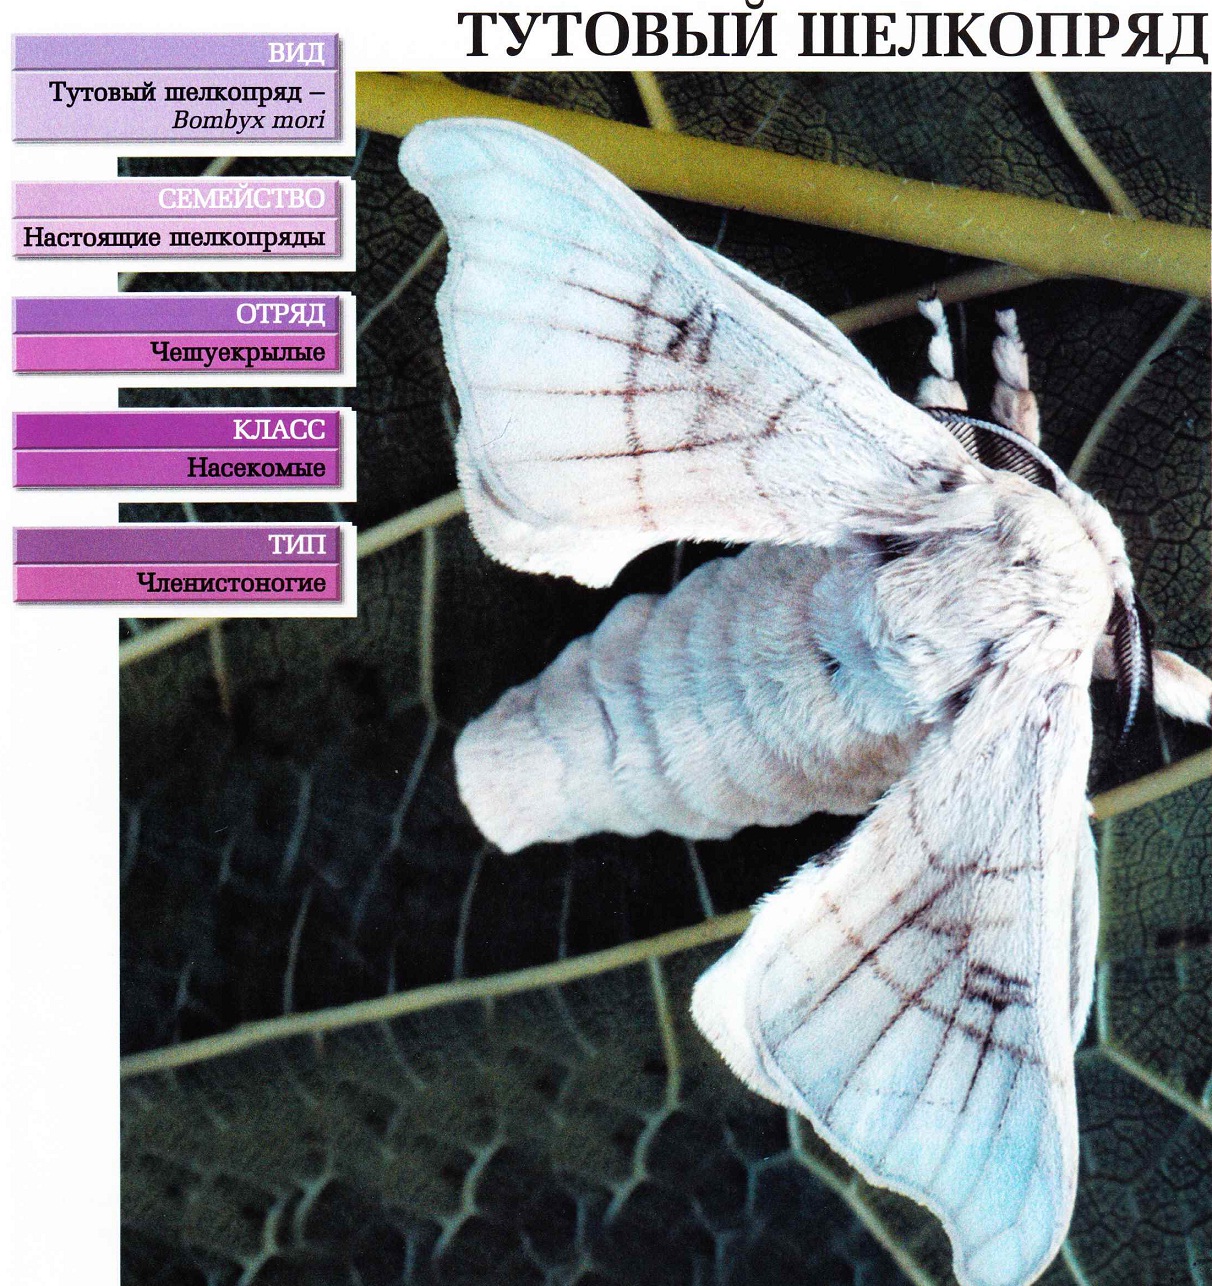 Систематика (научная классификация) шелкопряда тутового. Bombyx mori.